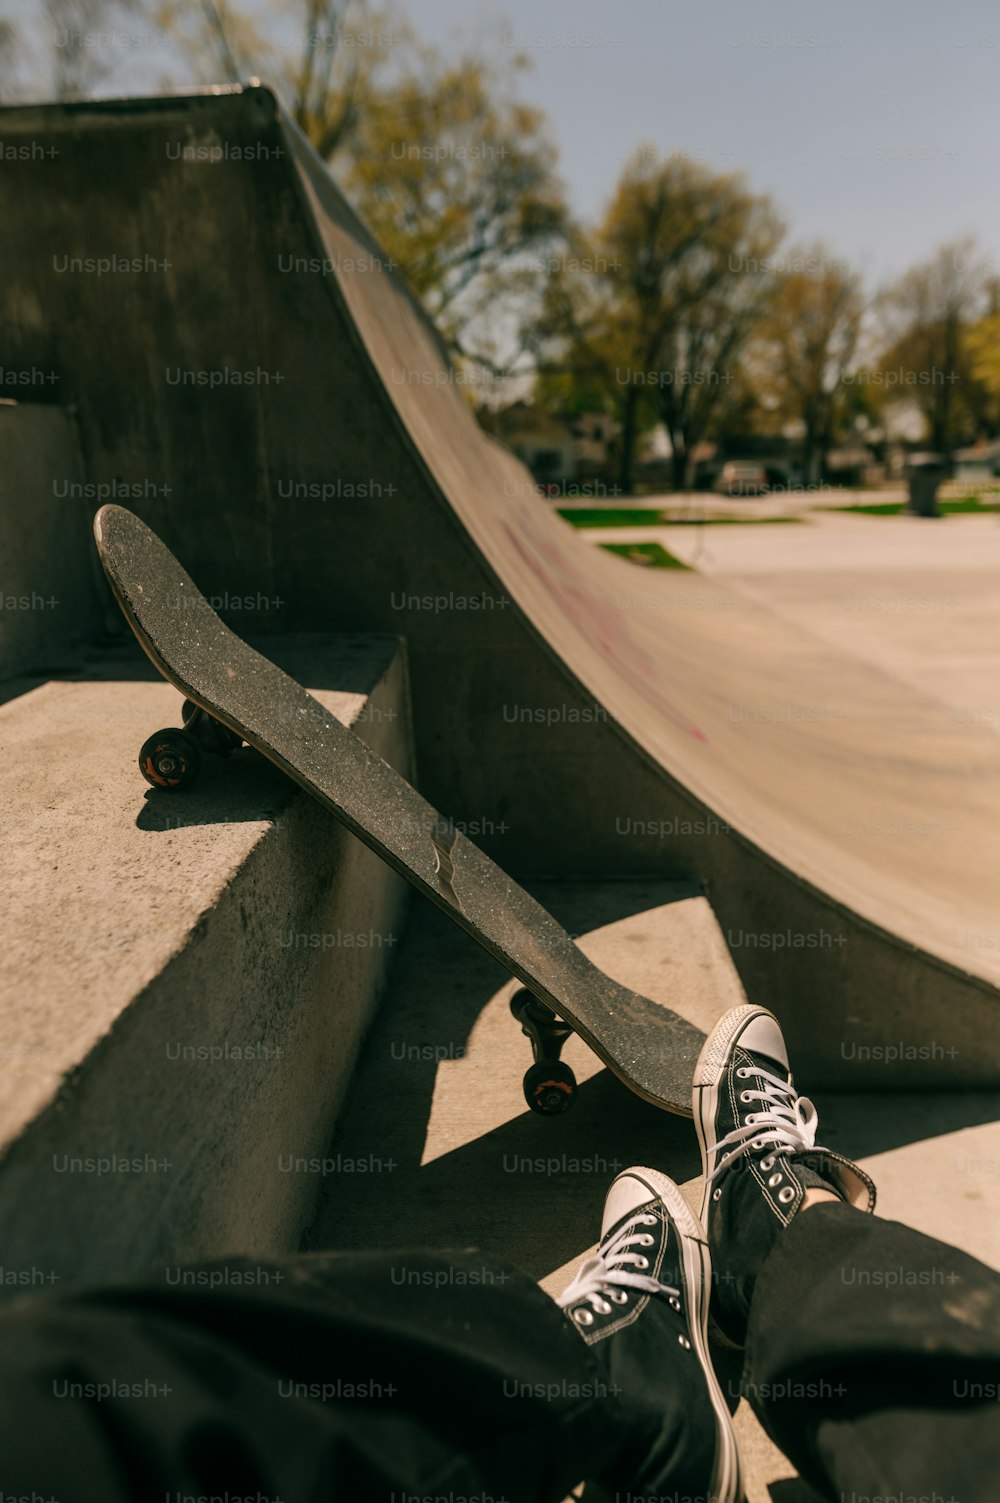 eine person mit den füßen auf einem skateboard in einem skatepark